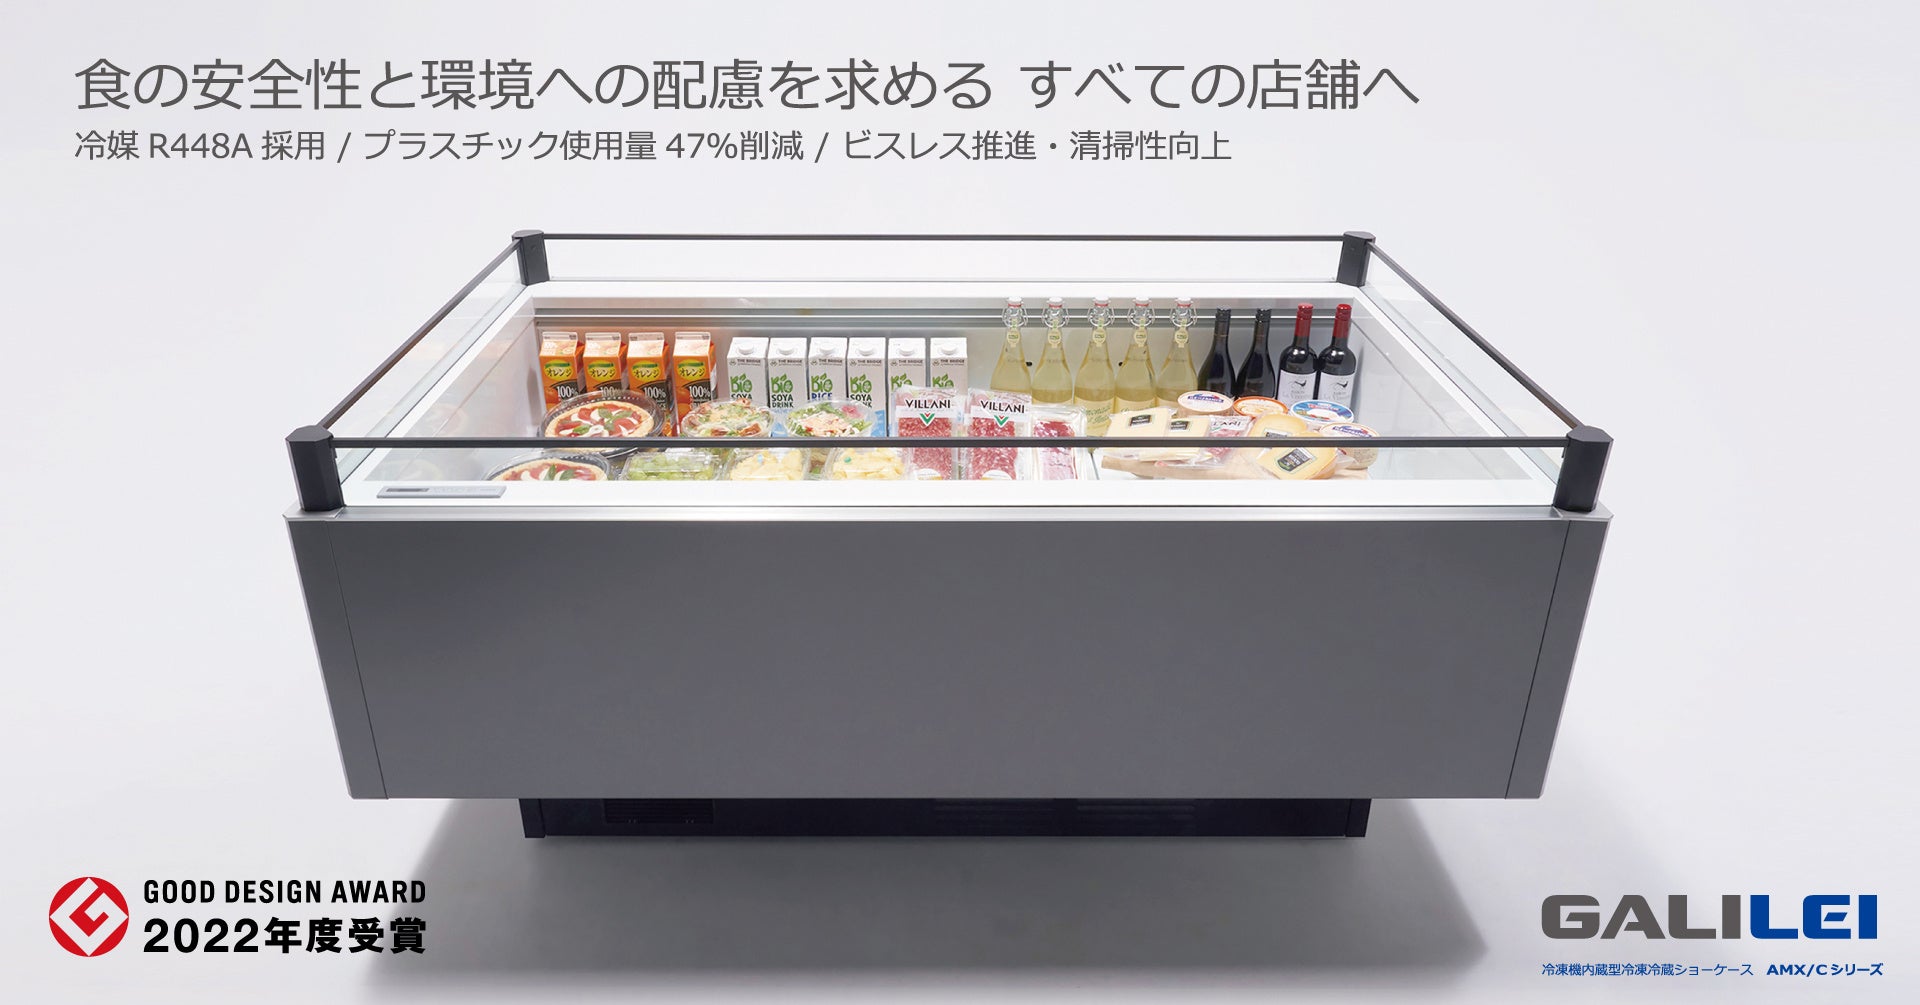 フクシマガリレイ冷凍機内蔵型冷凍冷蔵ショーケースAMX/Cシリーズが「2022年度グッドデザイン賞」を受賞